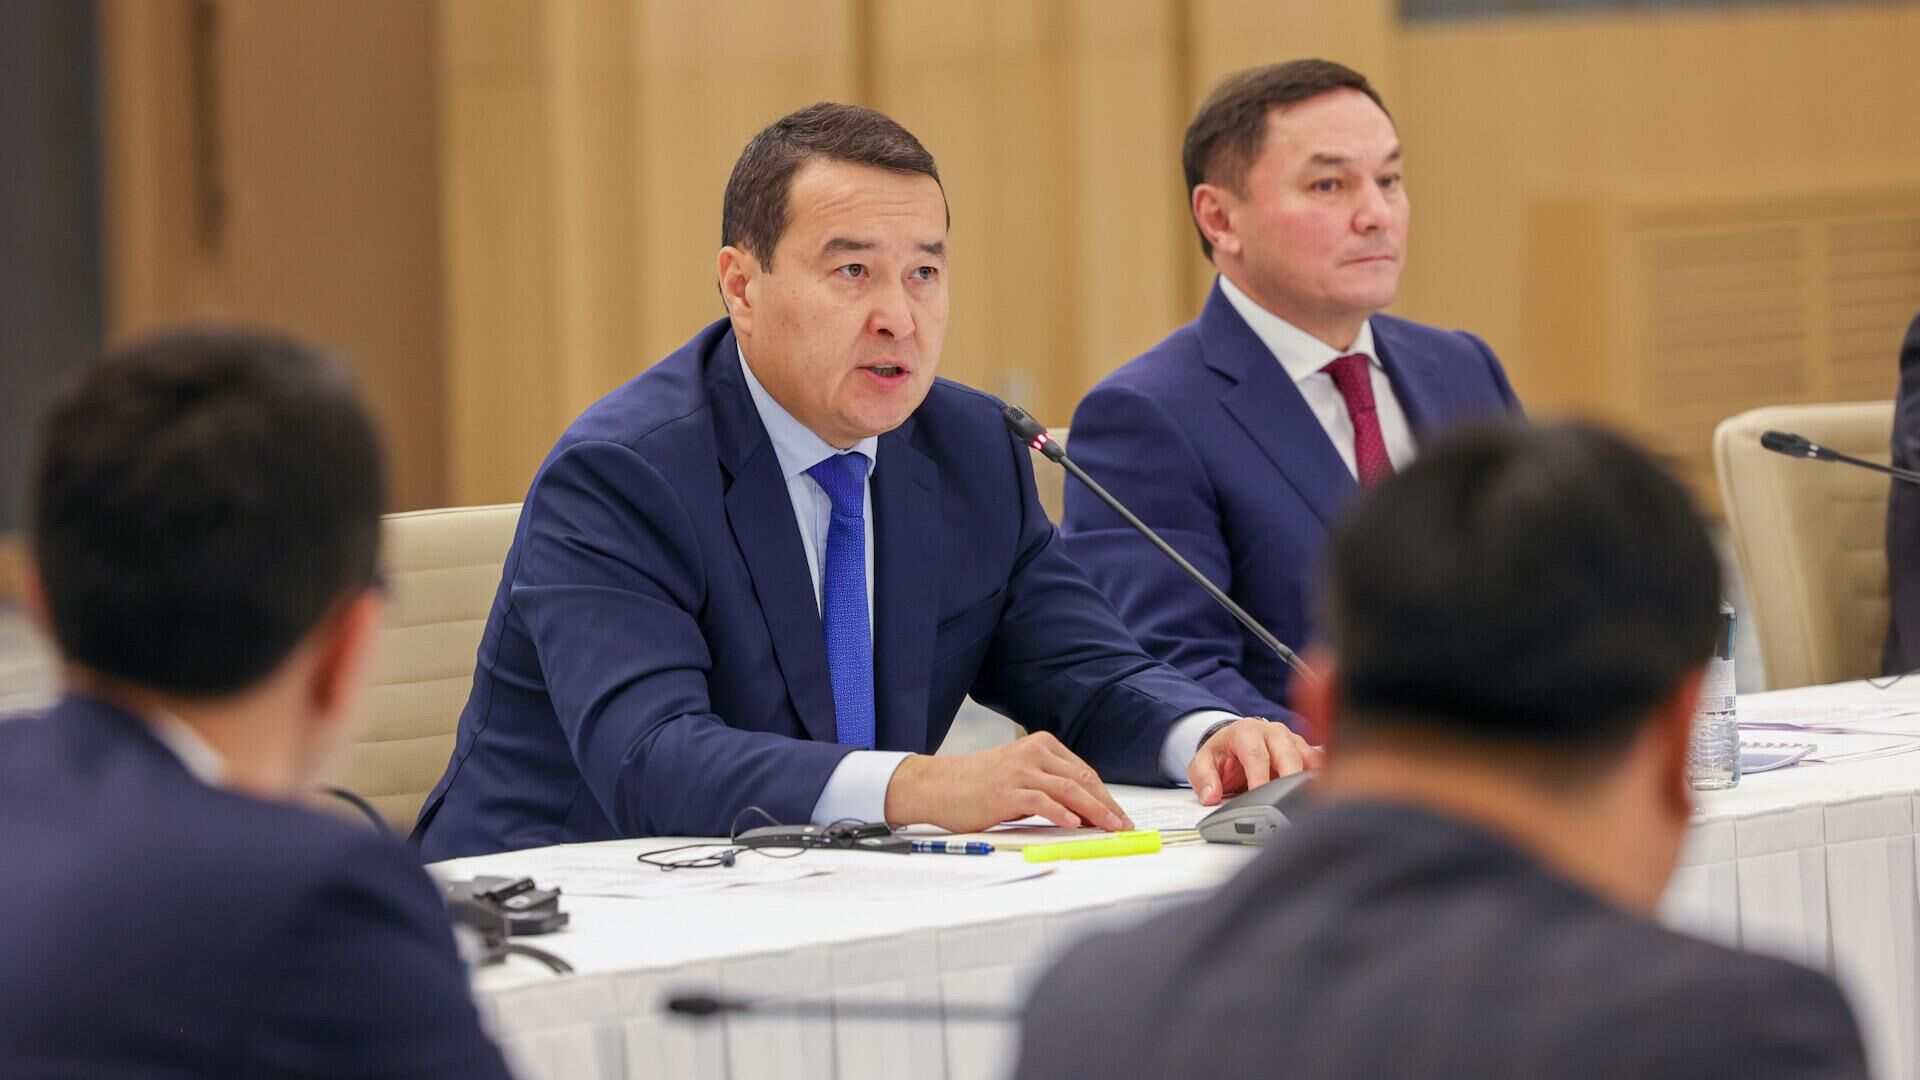 Премьер-министр Алихан Смаилов выступил на Международном форуме по развитию туризма, который проходит в Актау - Sputnik Казахстан, 1920, 15.09.2023